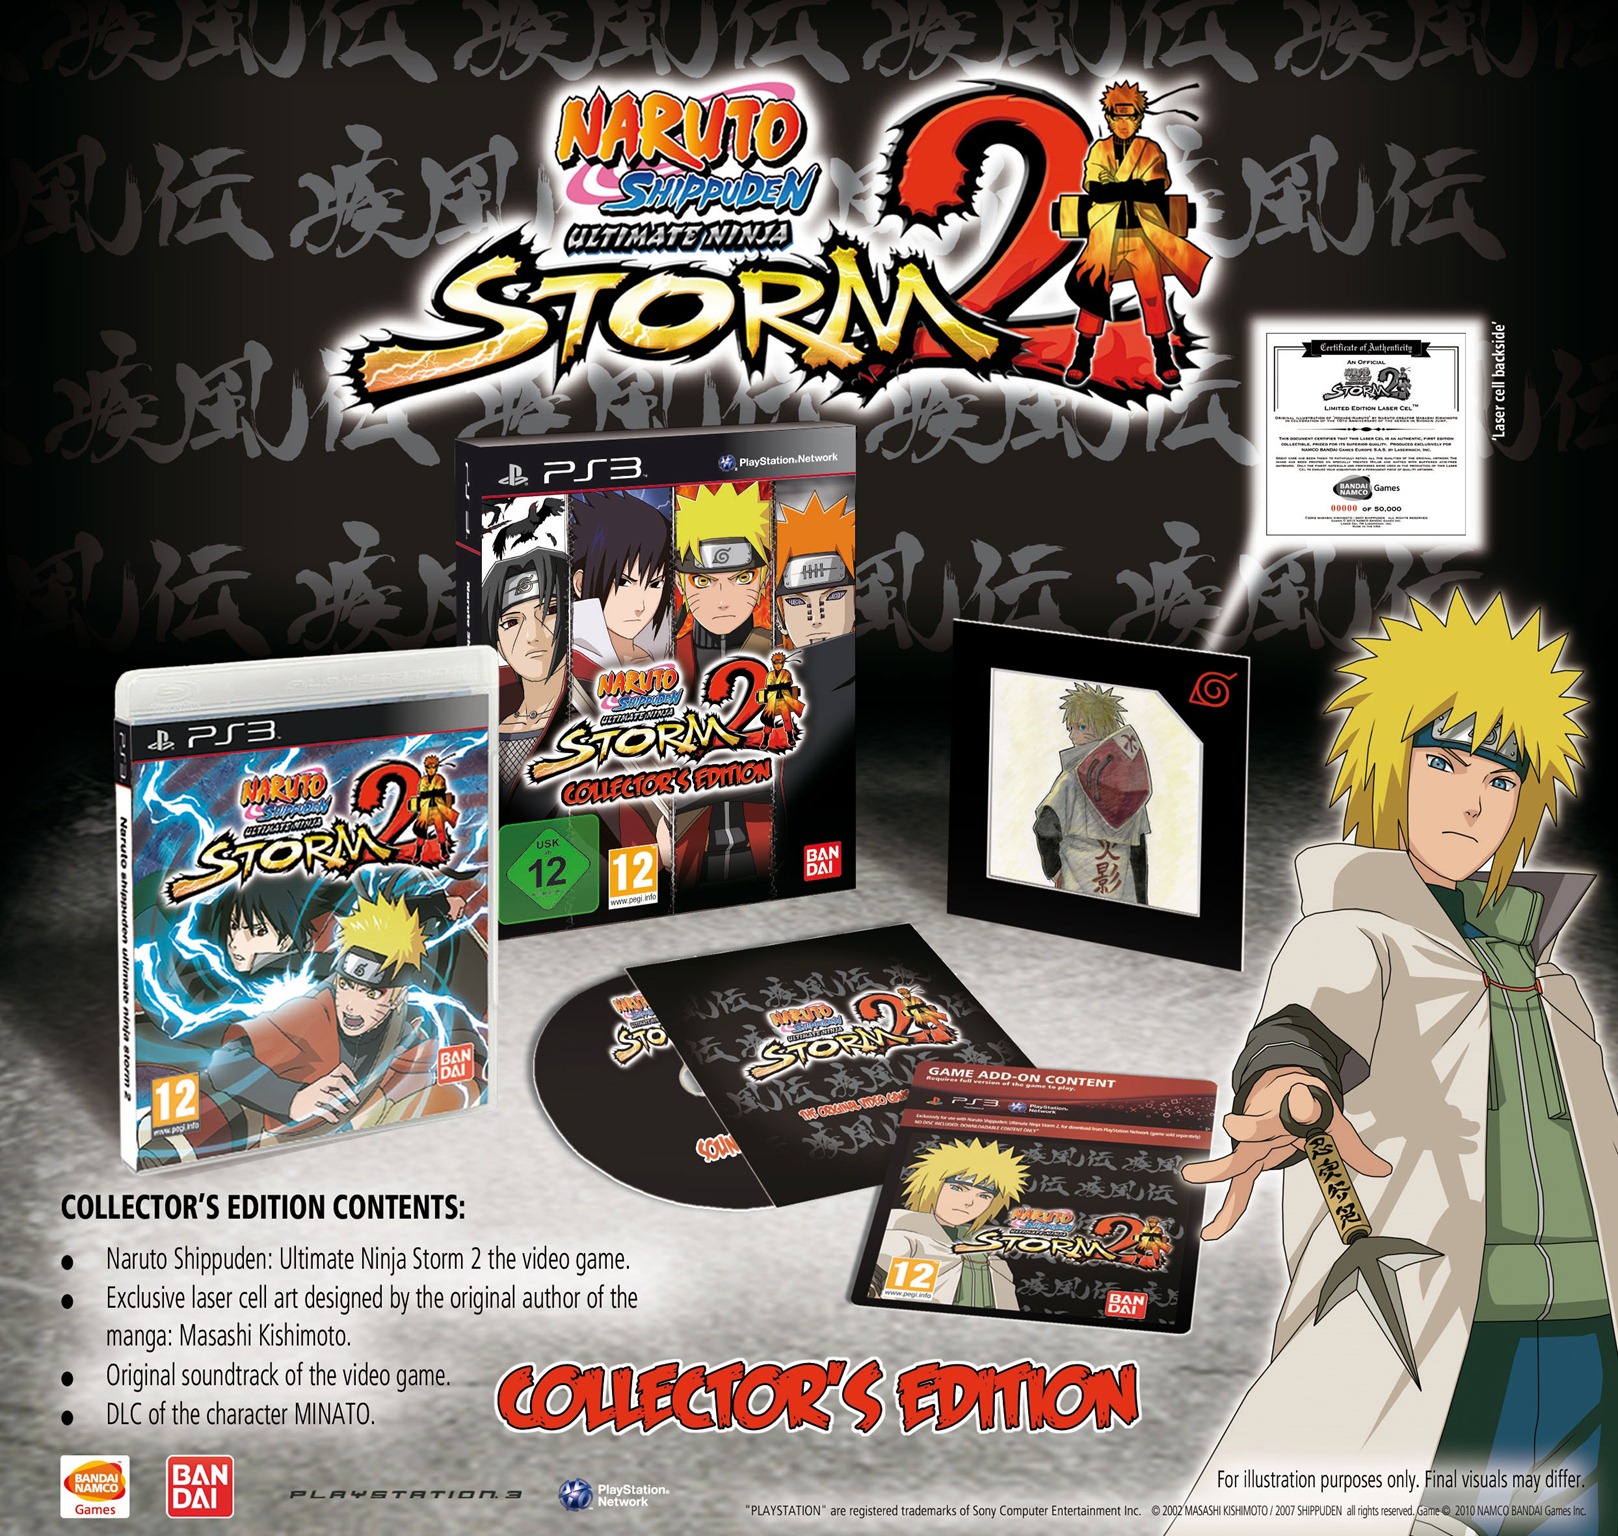 Naruto Shippuden: Ultimate Ninja 5 Videos for PlayStation 2 - GameFAQs